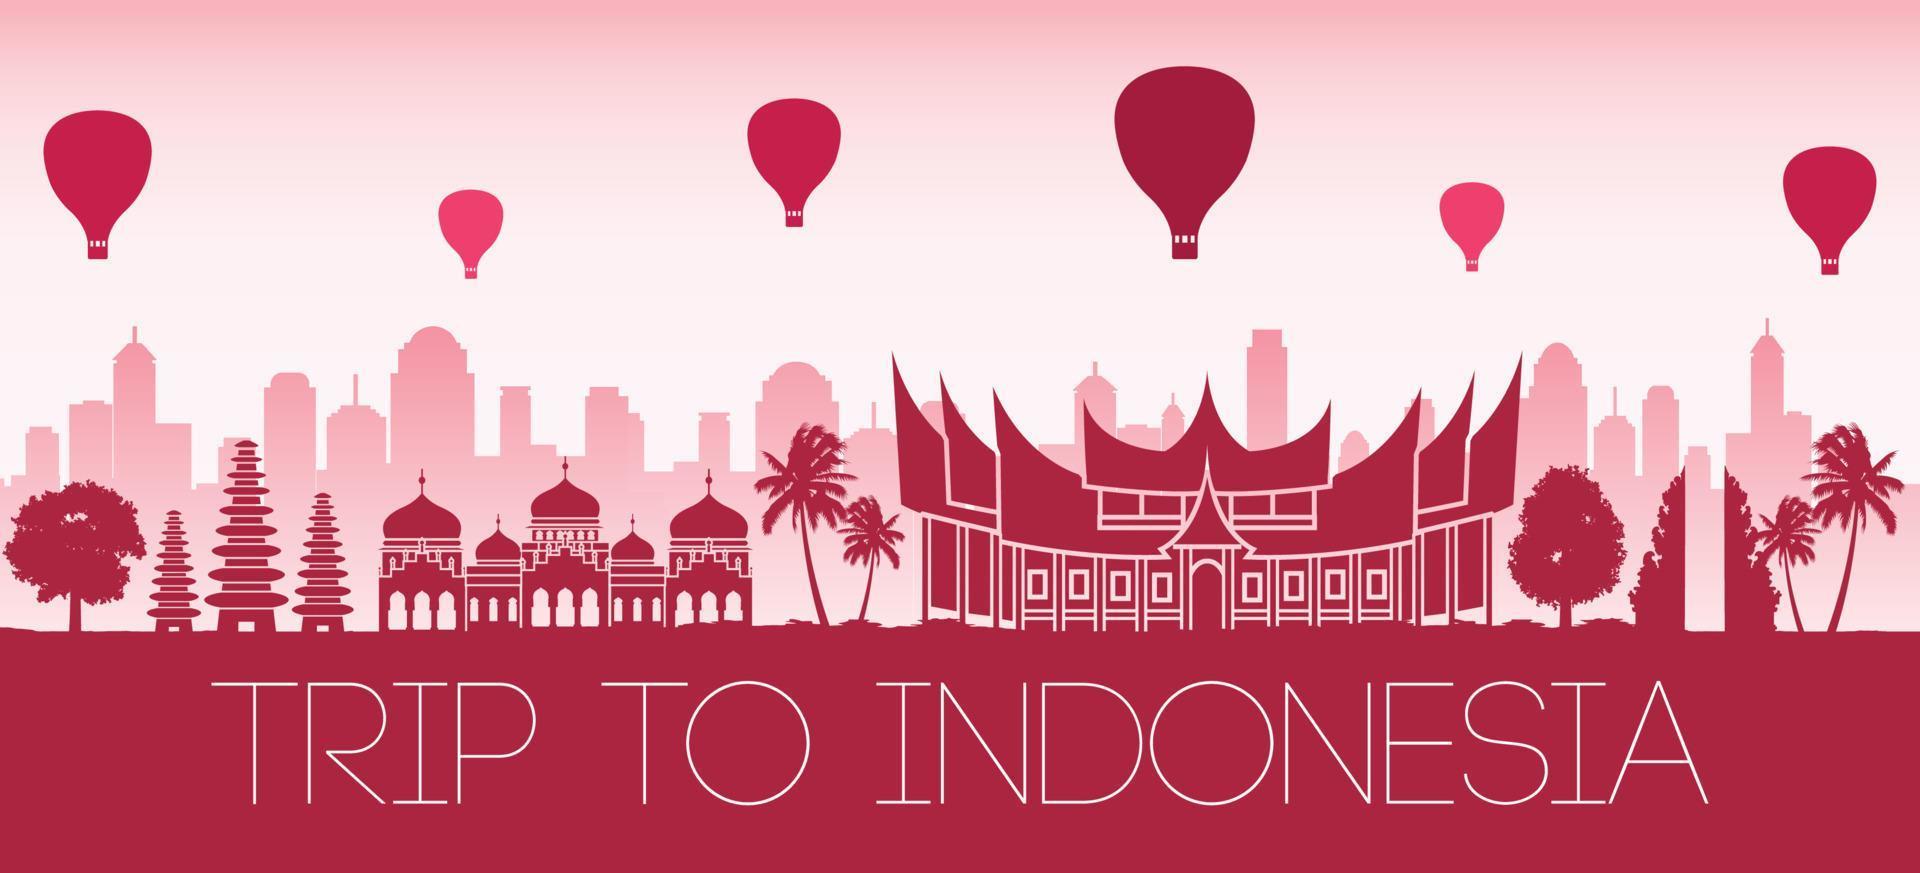 Indonésia famoso ponto turístico por balão flutuando na cor da bandeira com design de silhueta vermelha vetor